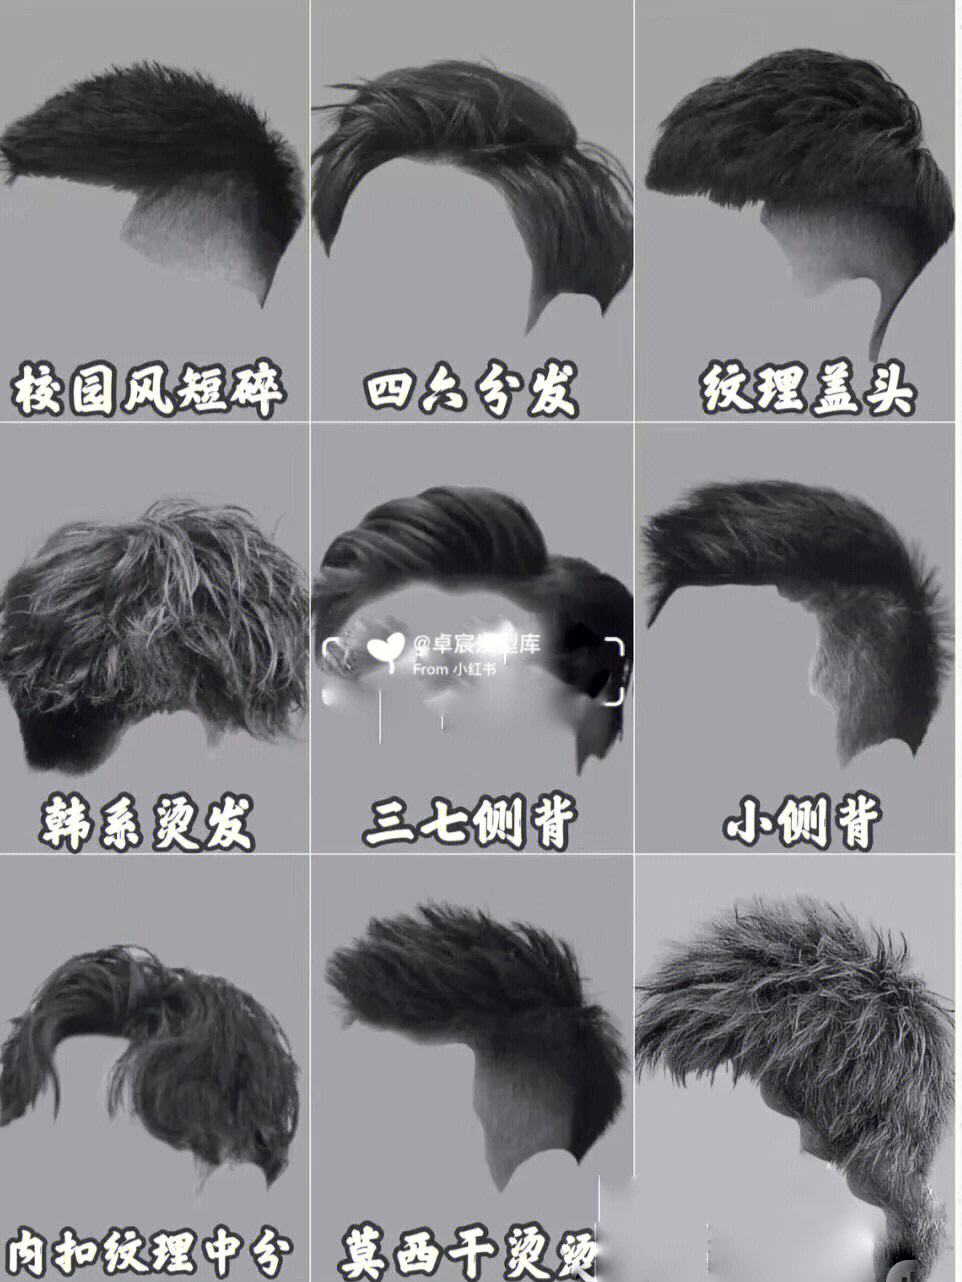 男生的发型种类及名称图片